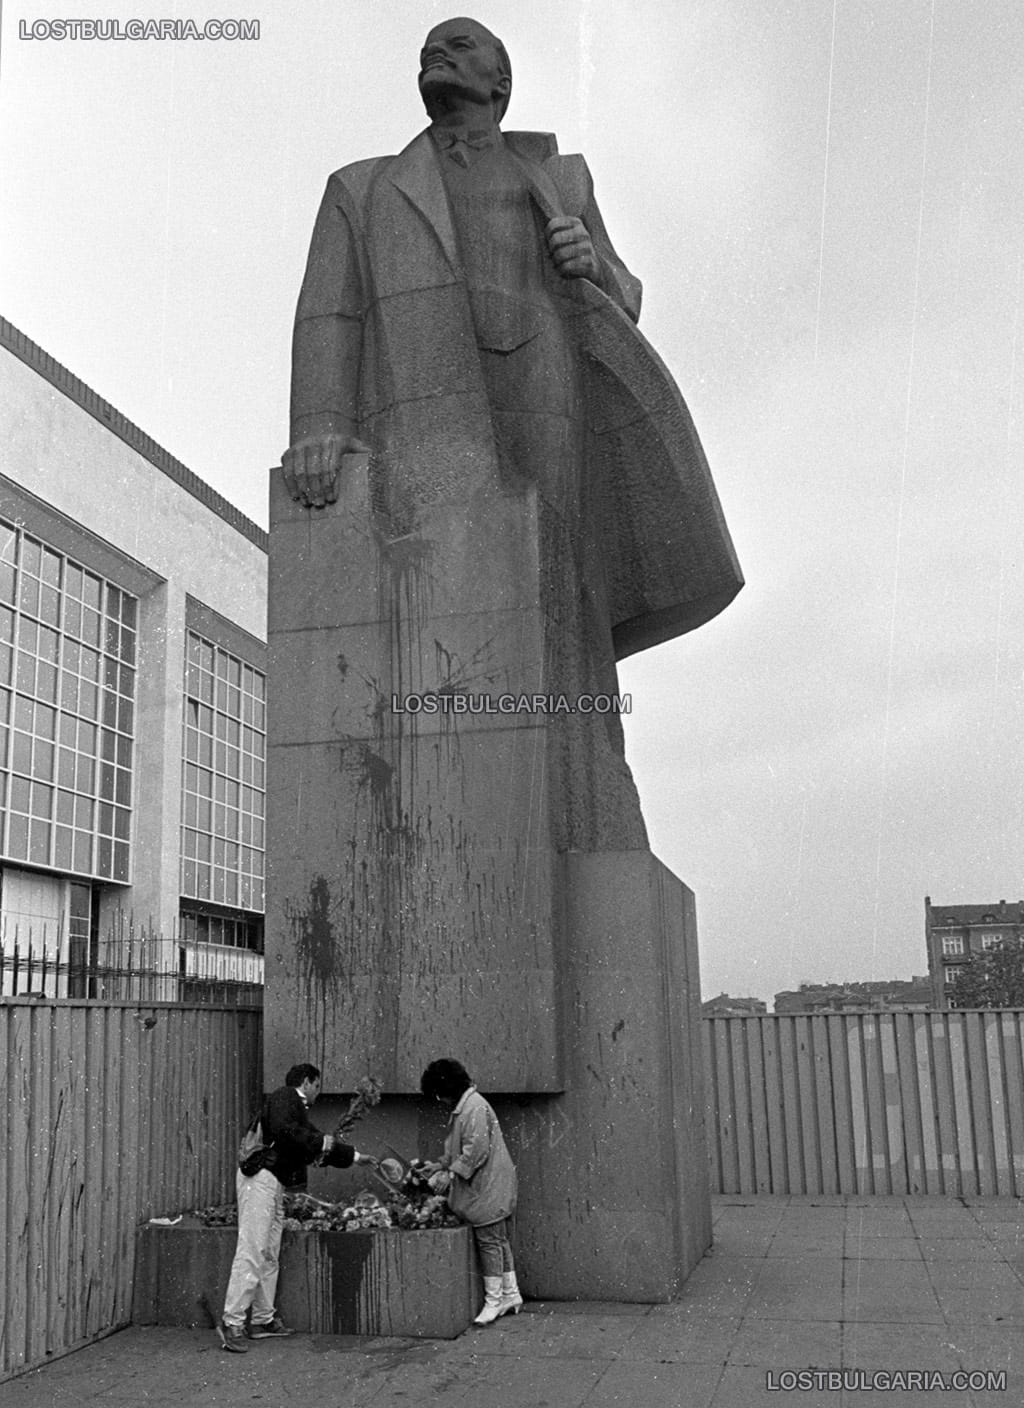 София, социалисти поднасят цветя на паметника на Ленин, на мястото на сегашния булевард "Тодор Александров", 1990-91 г.